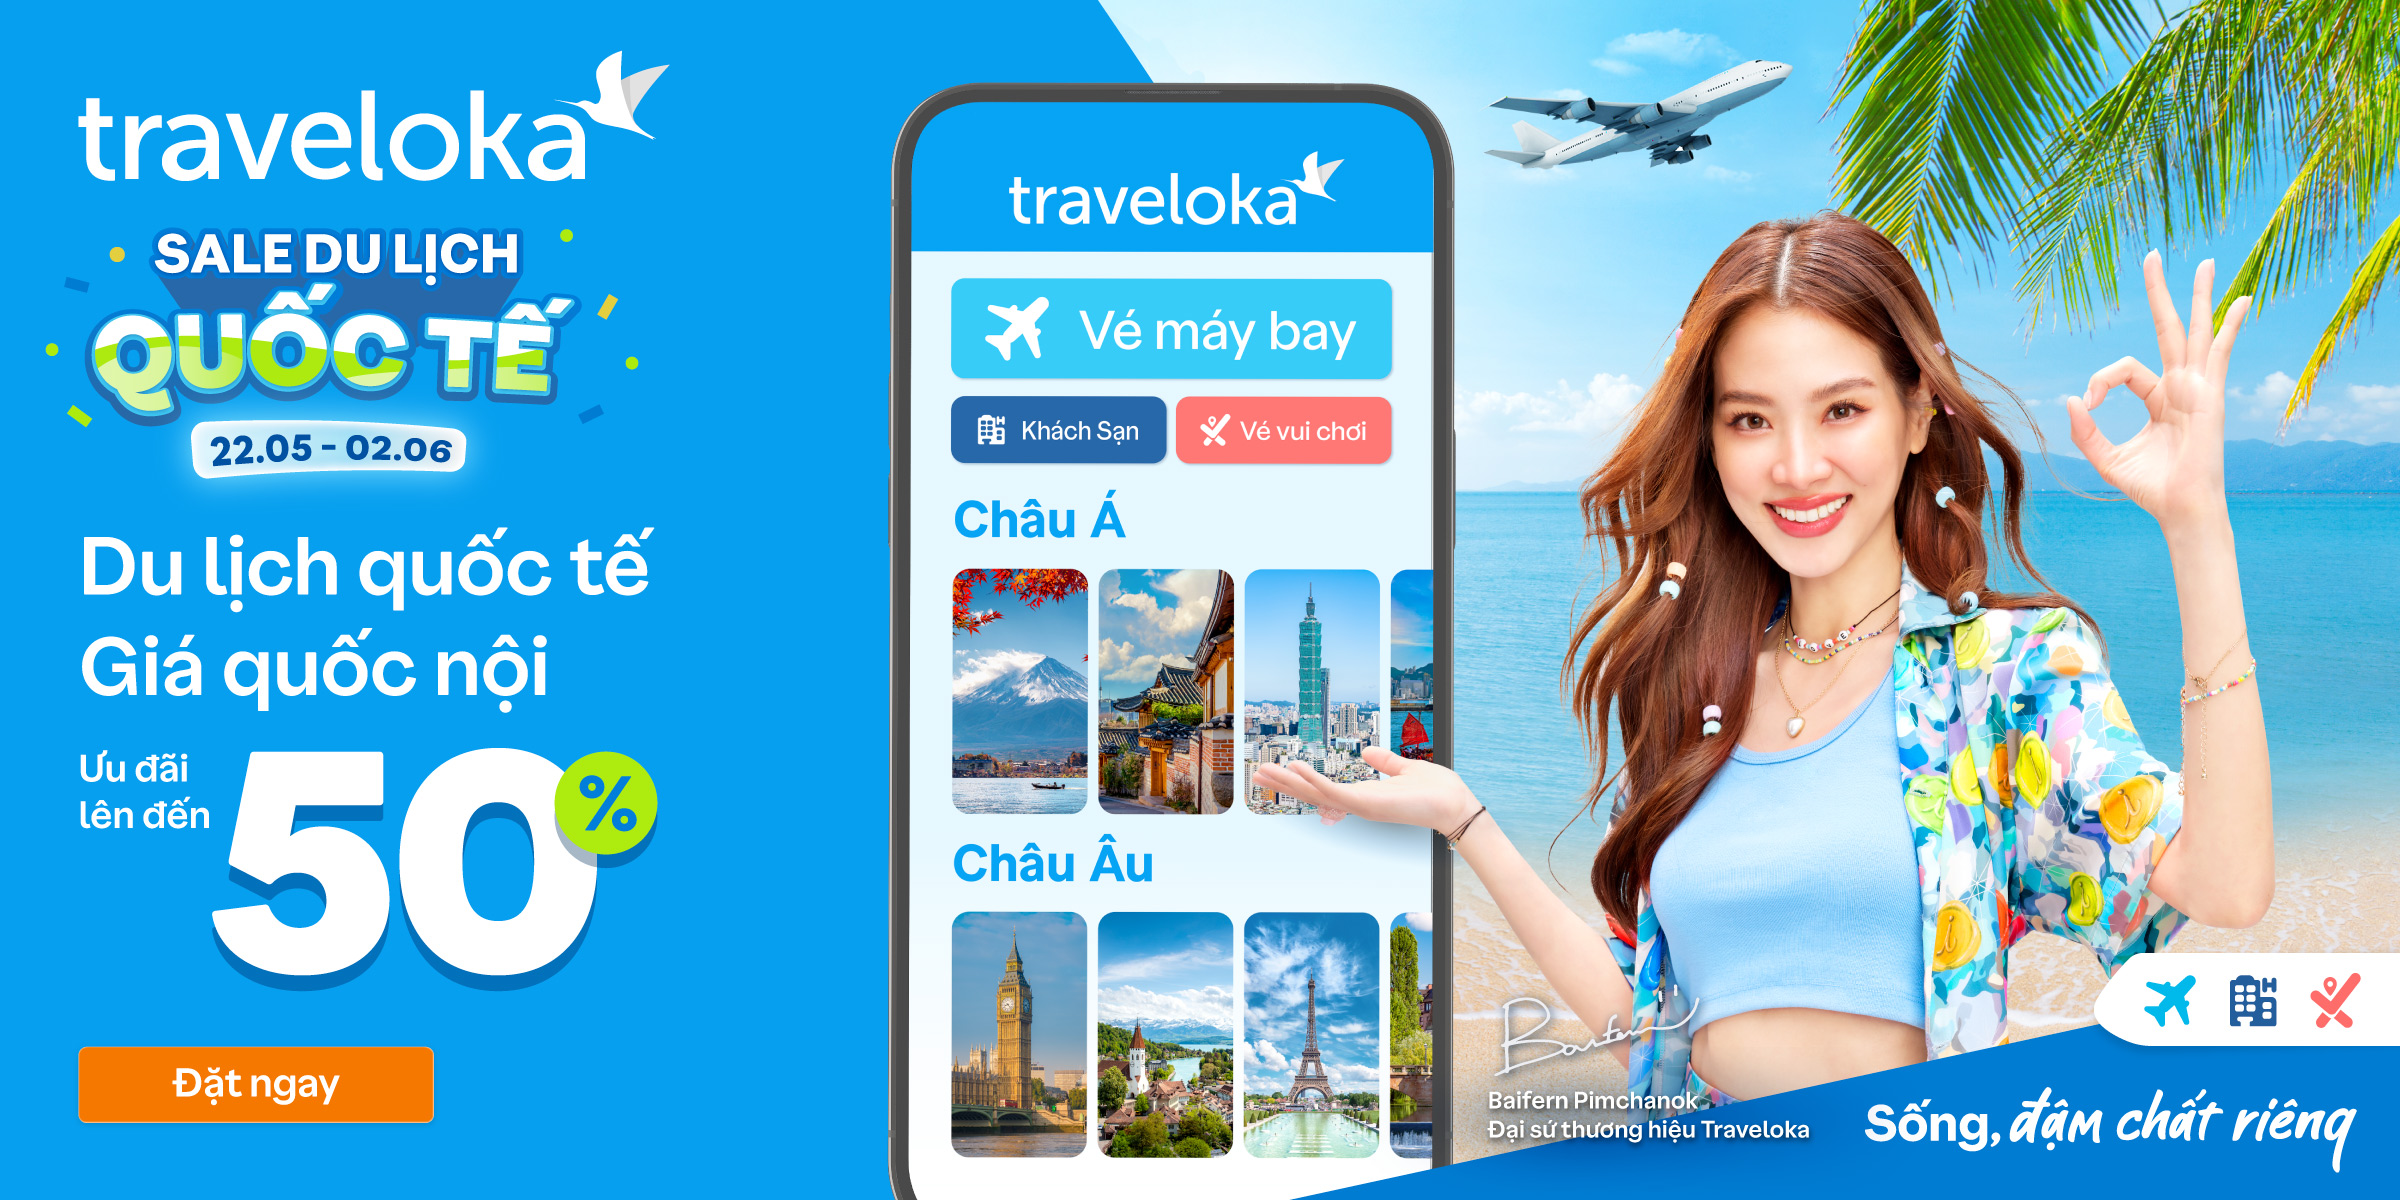 Sale Du lịch Quốc tế tại Traveloka – Đáp ứng nhu cầu du lịch quốc tế của người dùng Việt - 1